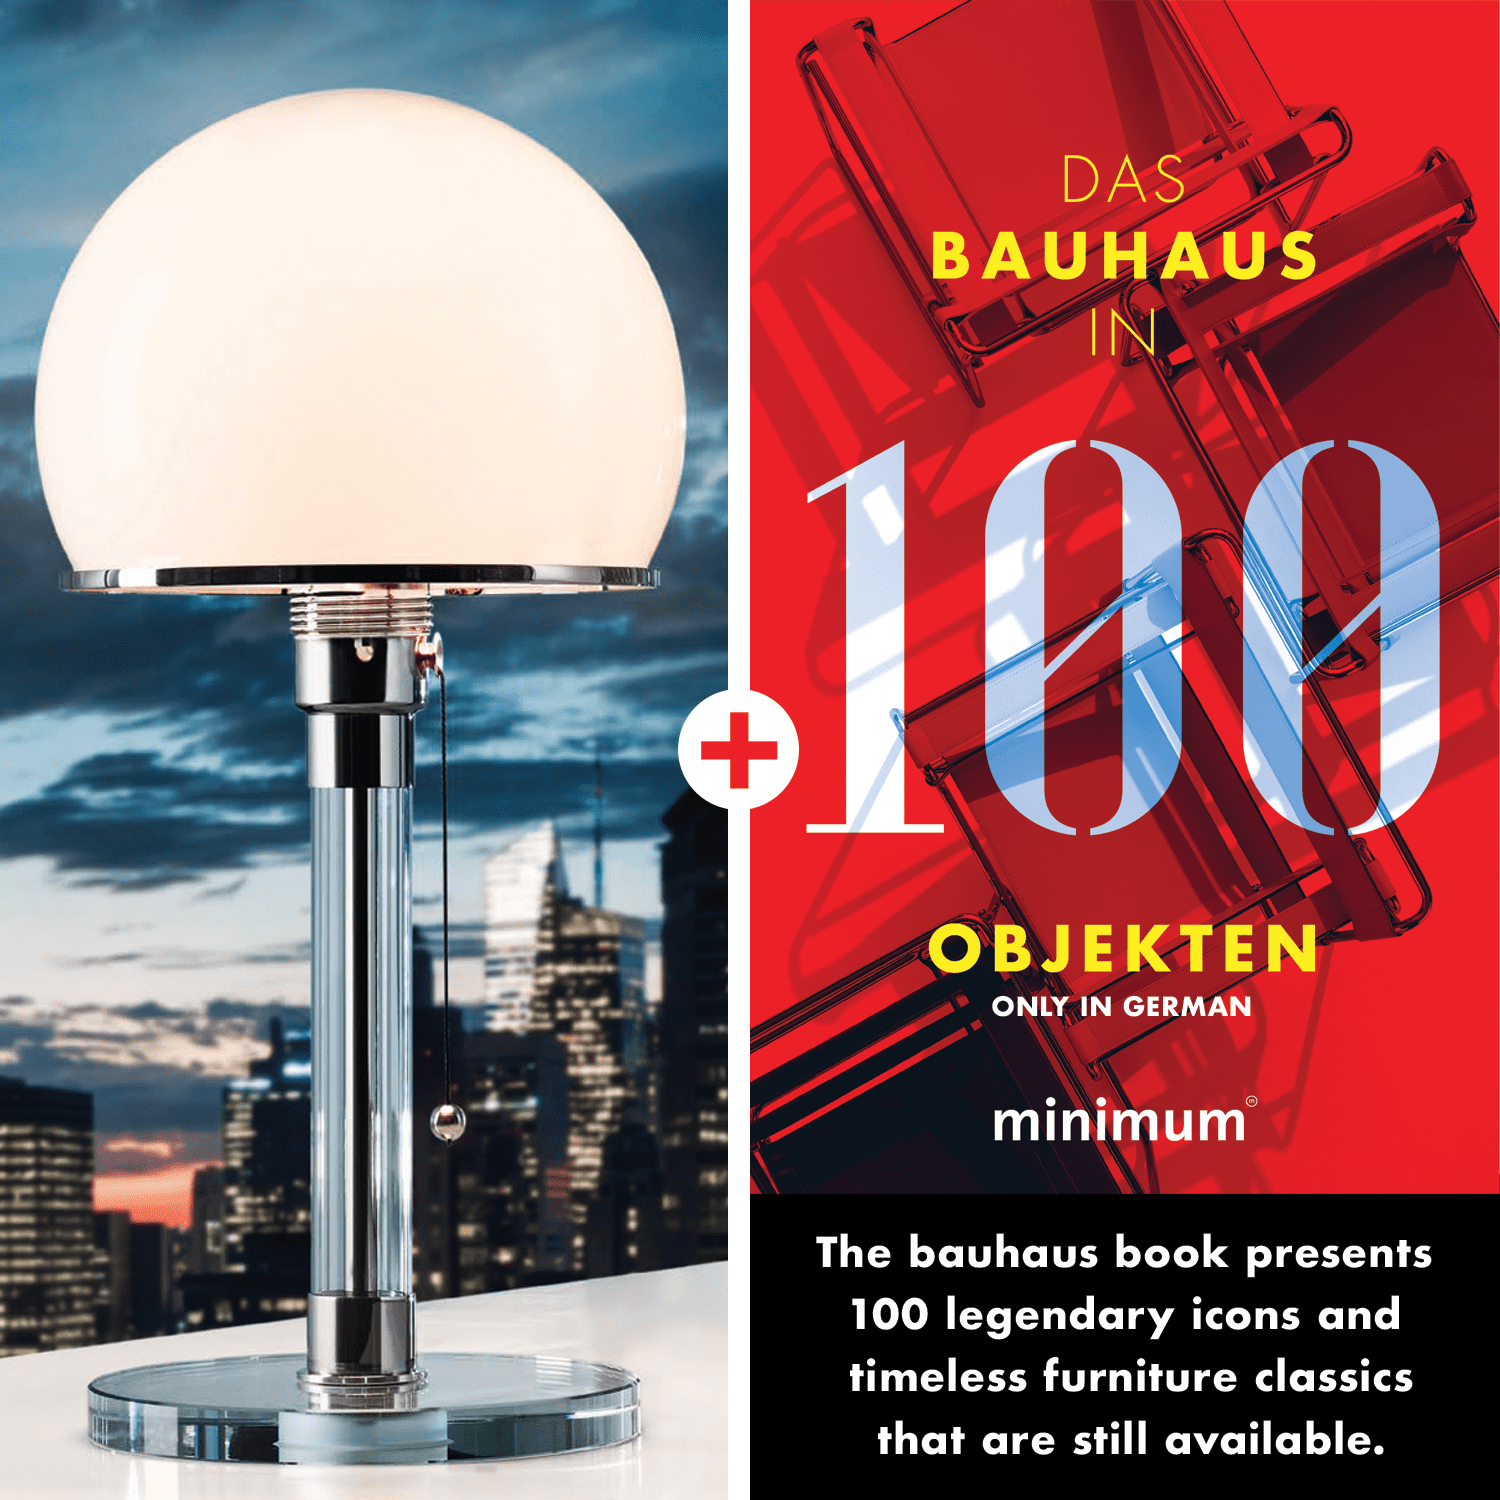 תמונה של Wagenfeld Lamp WG 24 + Bauhaus in 100 Objects